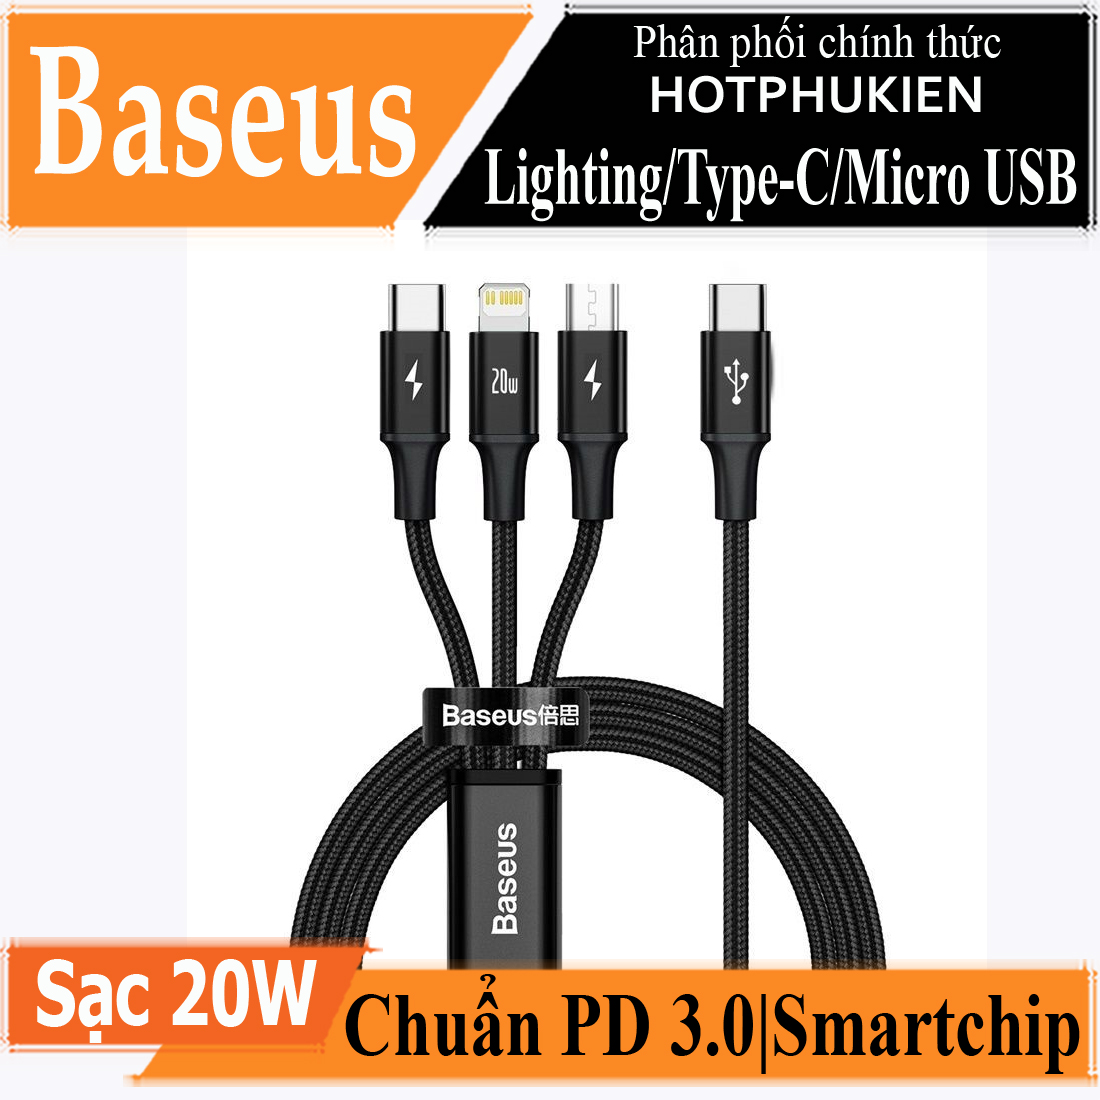 Dây cáp sạc nhanh 20W 3 in 1 Type-C to Lightning / Type C / Micro USB chuẩn PD 3.0 hiệu Baseus Rapid Series 3-in-1 (hỗ trợ sạc nhanh 3.5A, truyền dữ liệu 480Mbps) (bảo hành 3 tháng 1 đổi 1) - Phân phối bởi Hotphukien